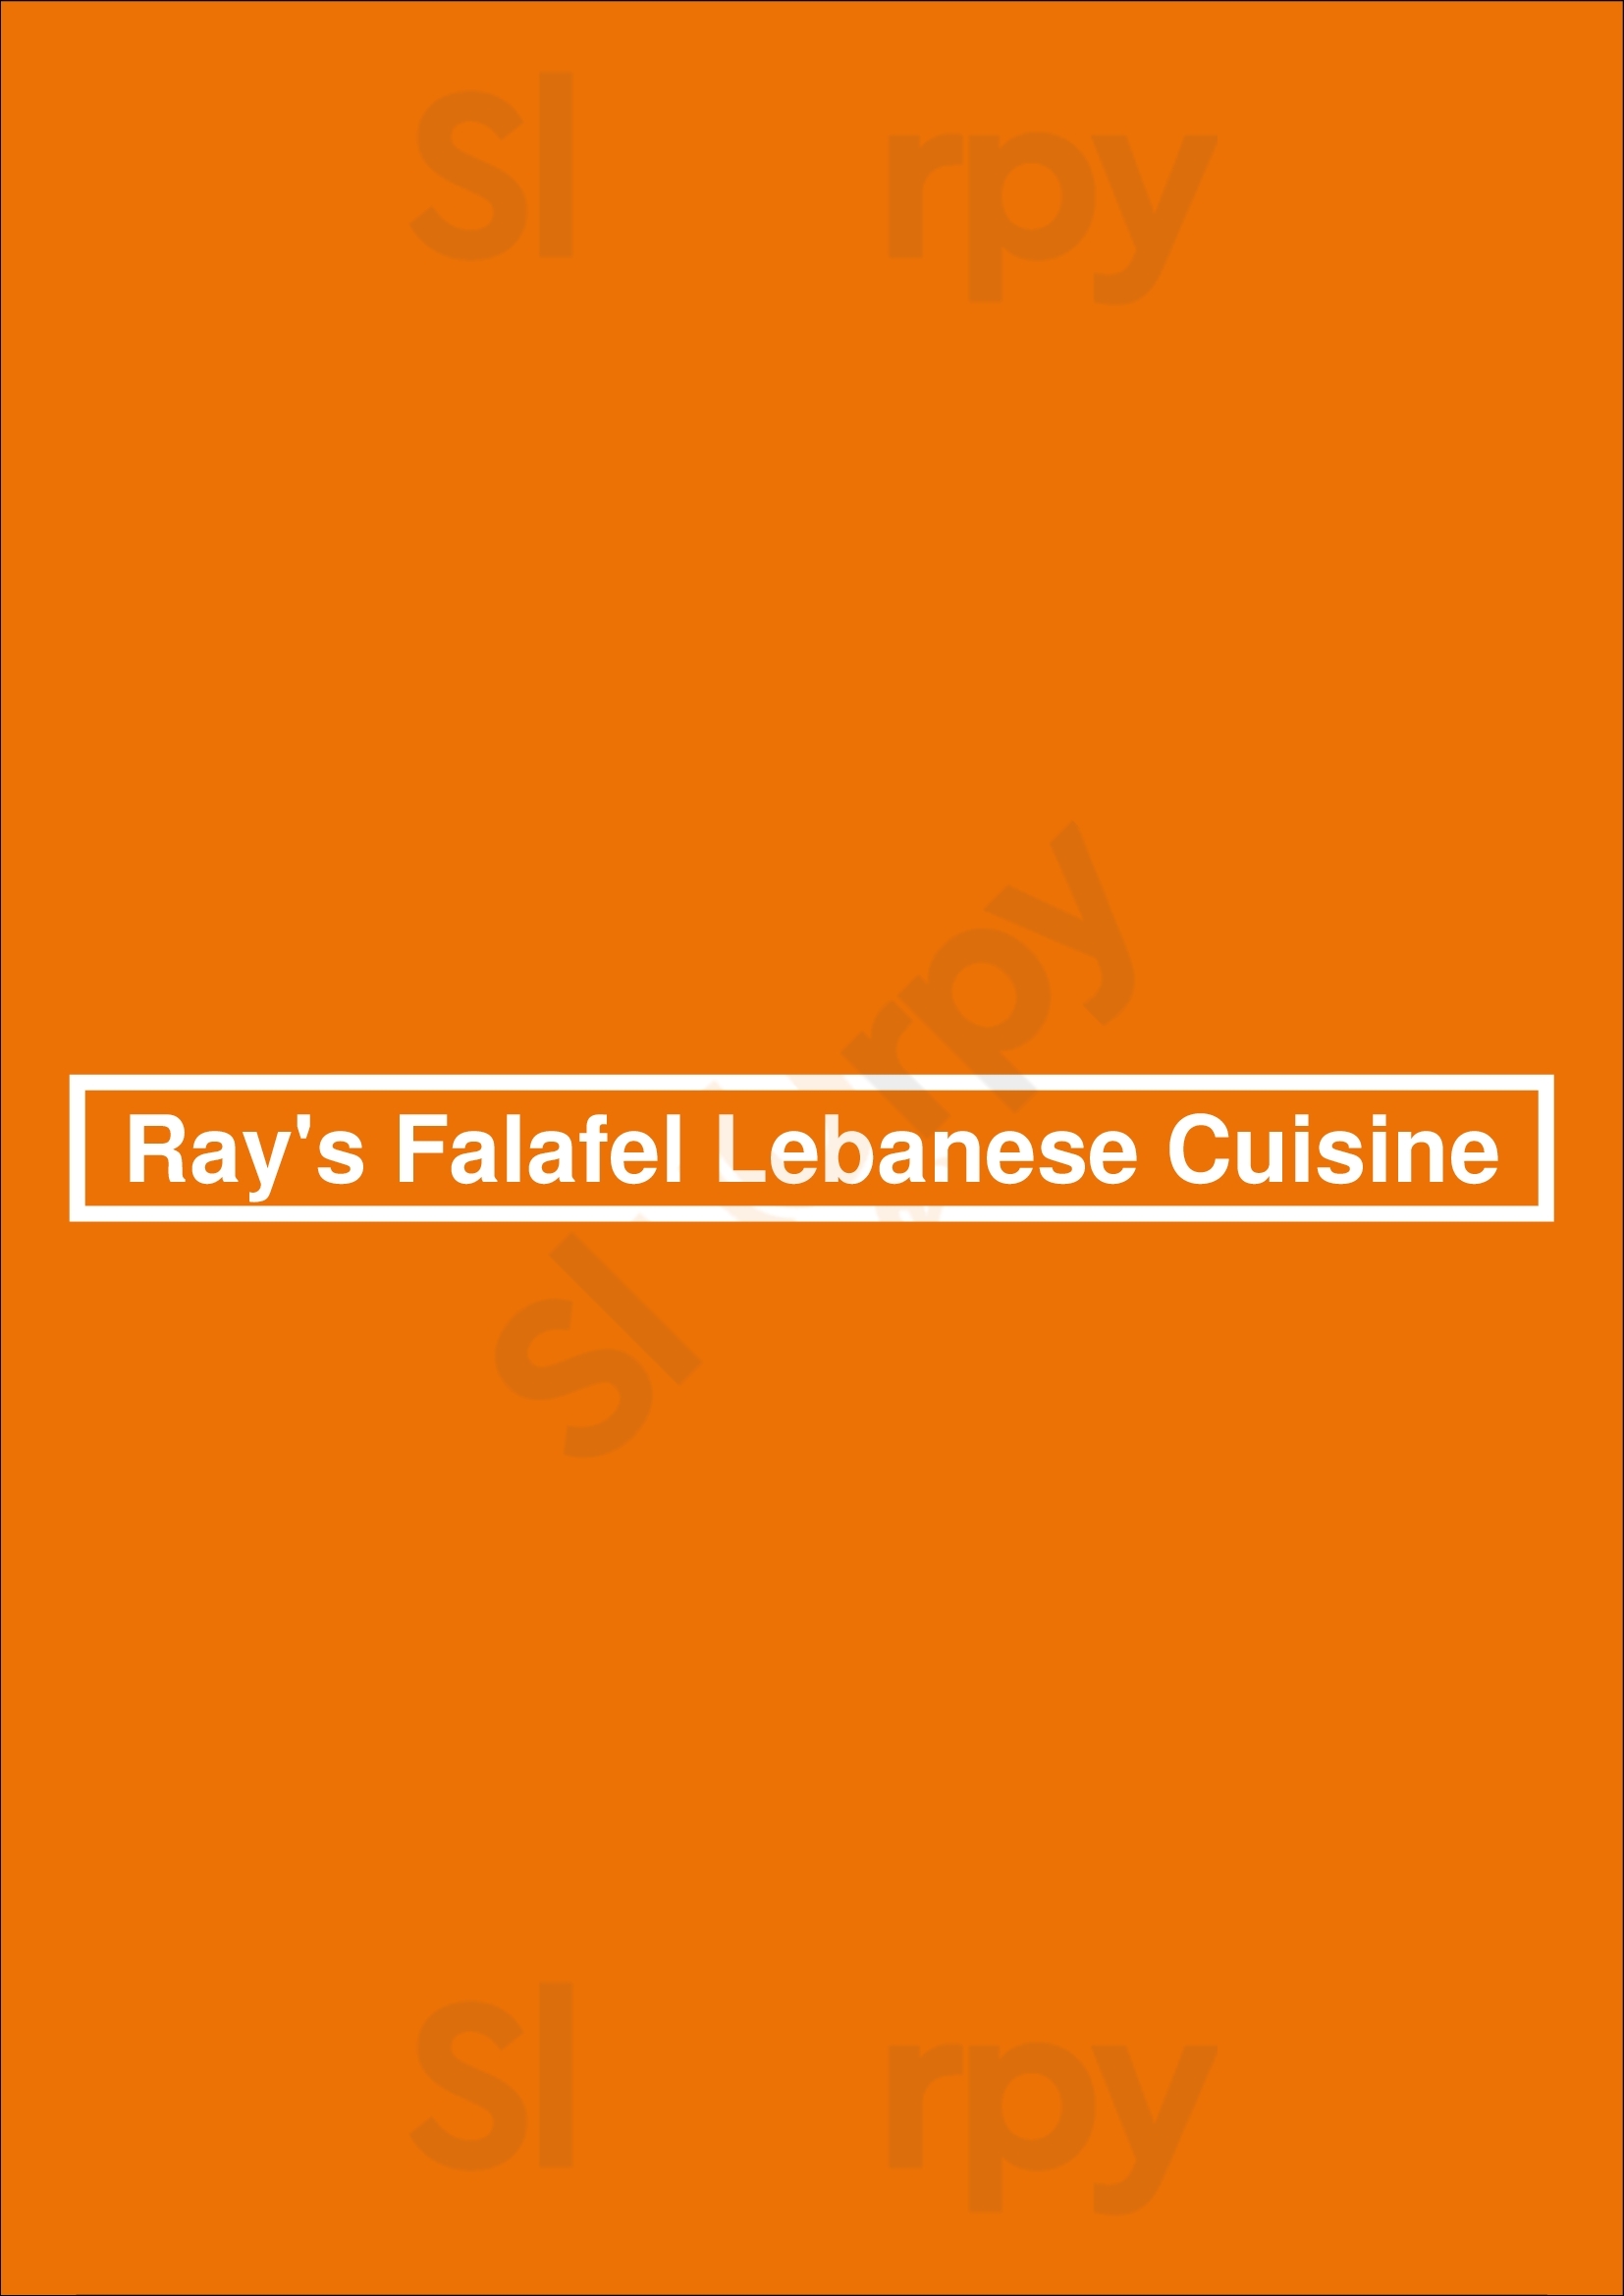 Ray's Falafel Lebanese Cuisine Dartmouth Menu - 1